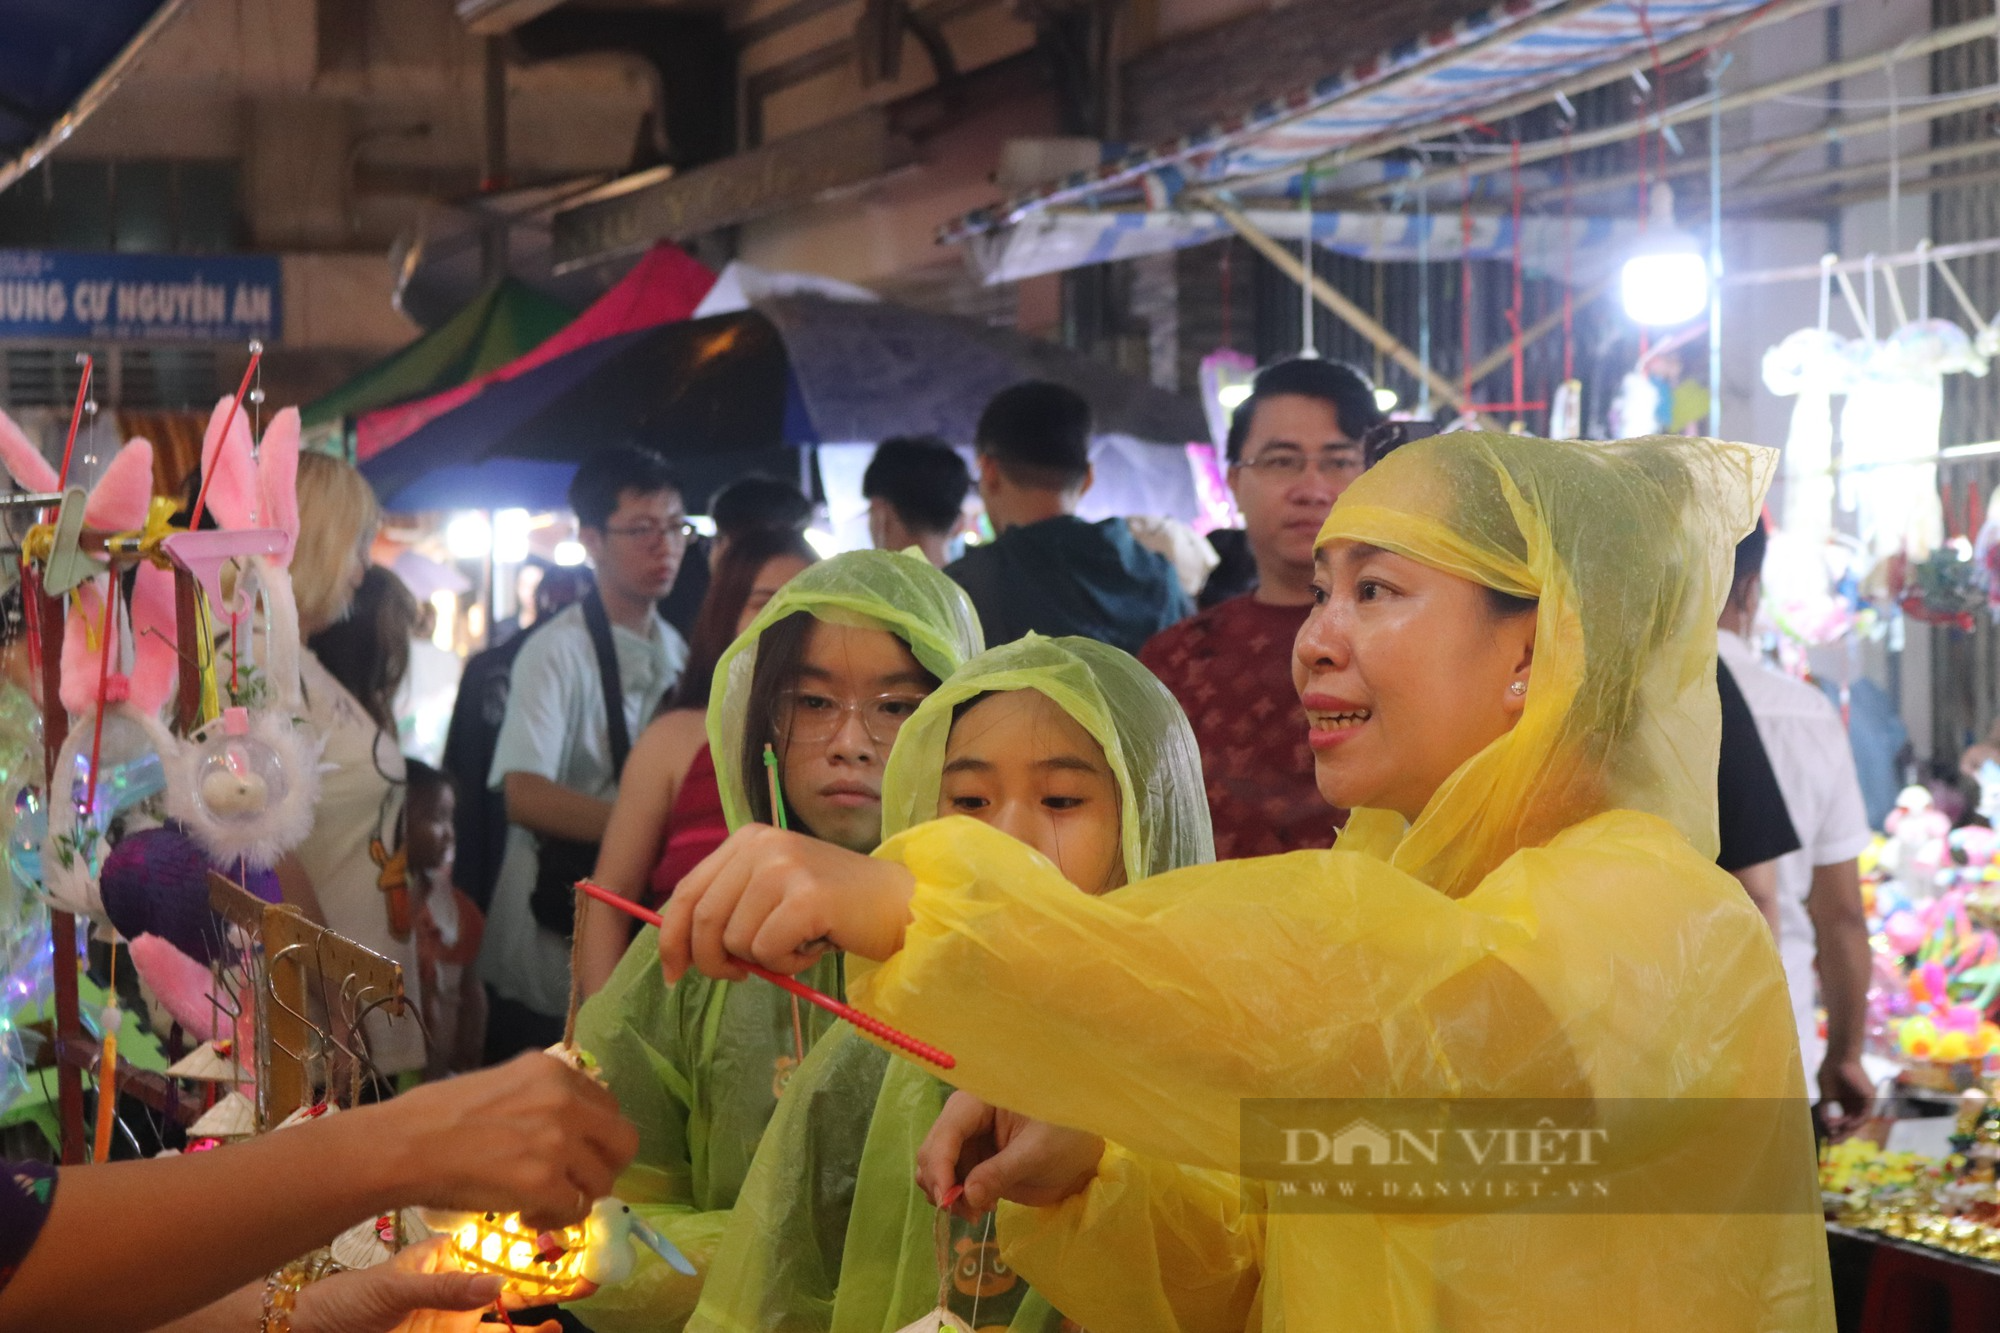 Bất chấp mưa lớn, người Sài Gòn vẫn che dù, mặc áo mưa đi chơi Trung thu - Ảnh 3.